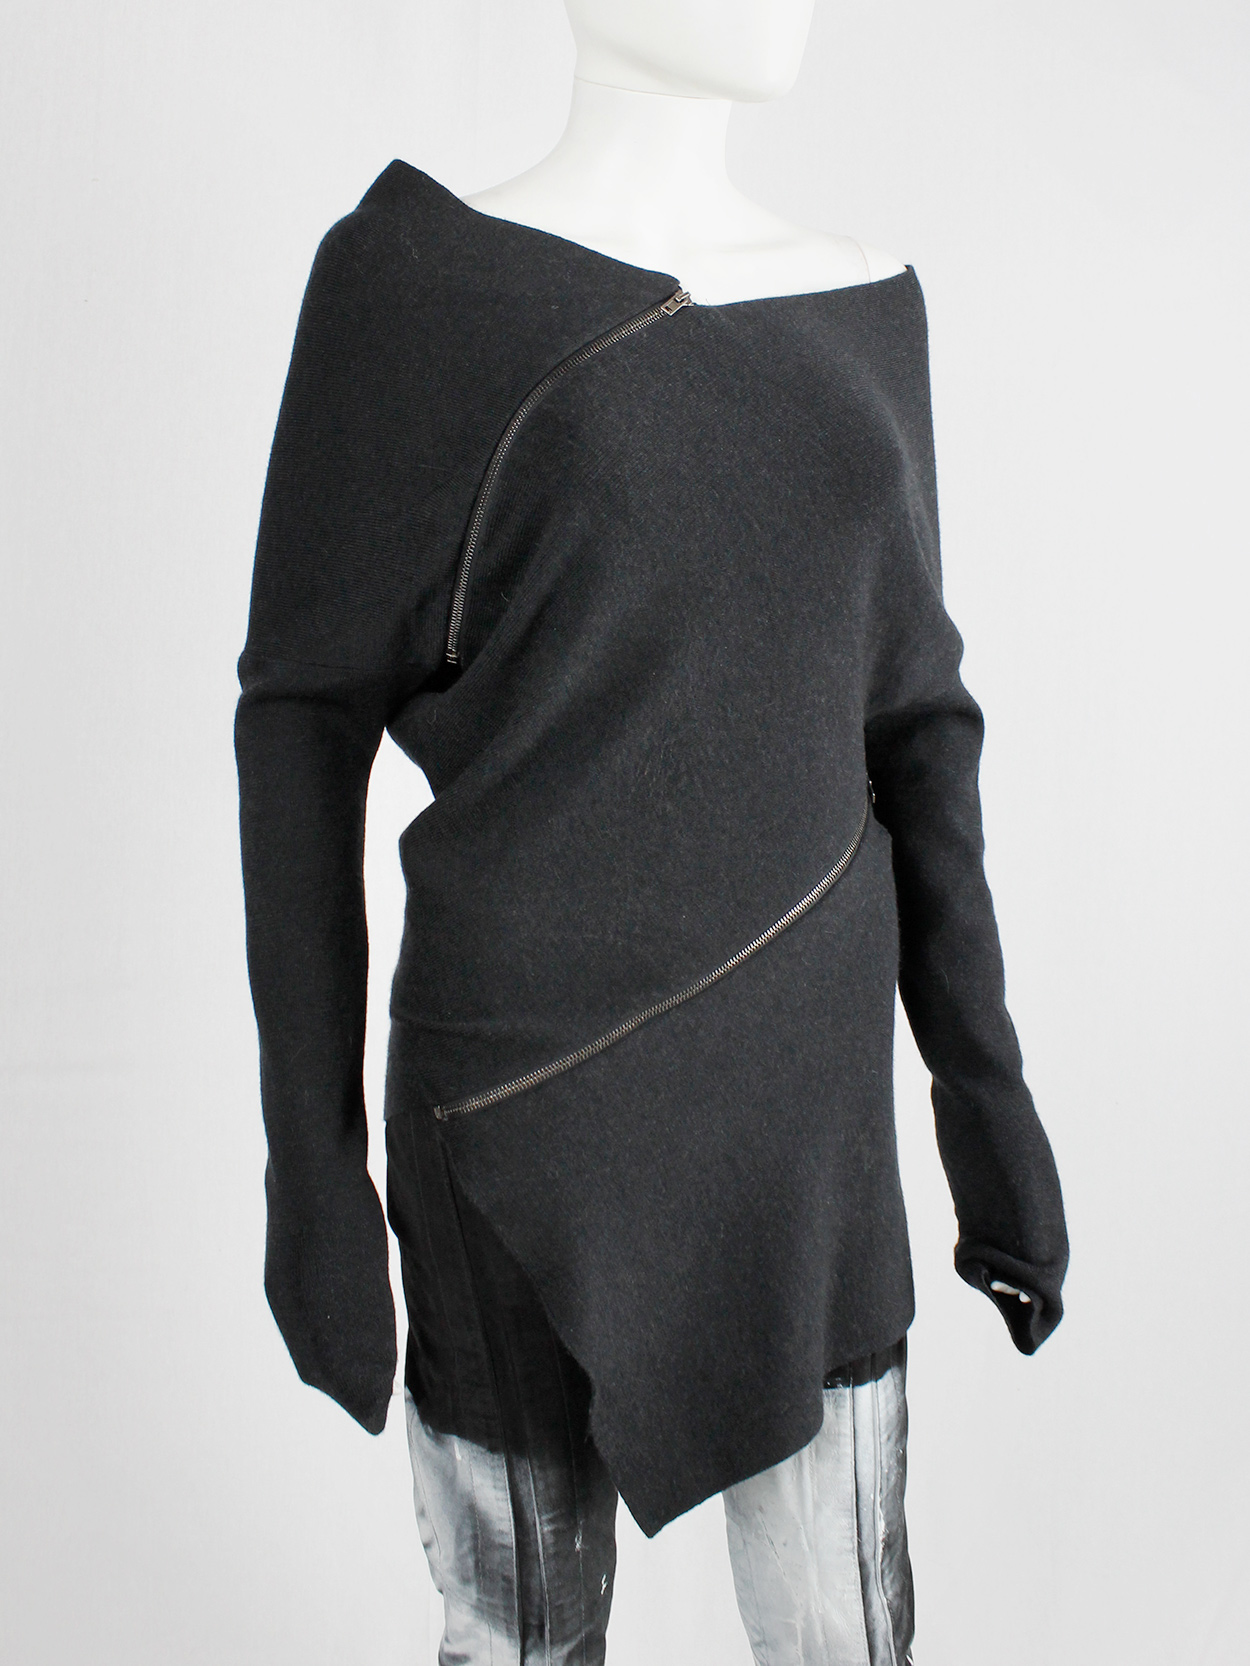 Maison Martin Margiela 1 dark grey jumper with spiral zippers fall 2012 (4)